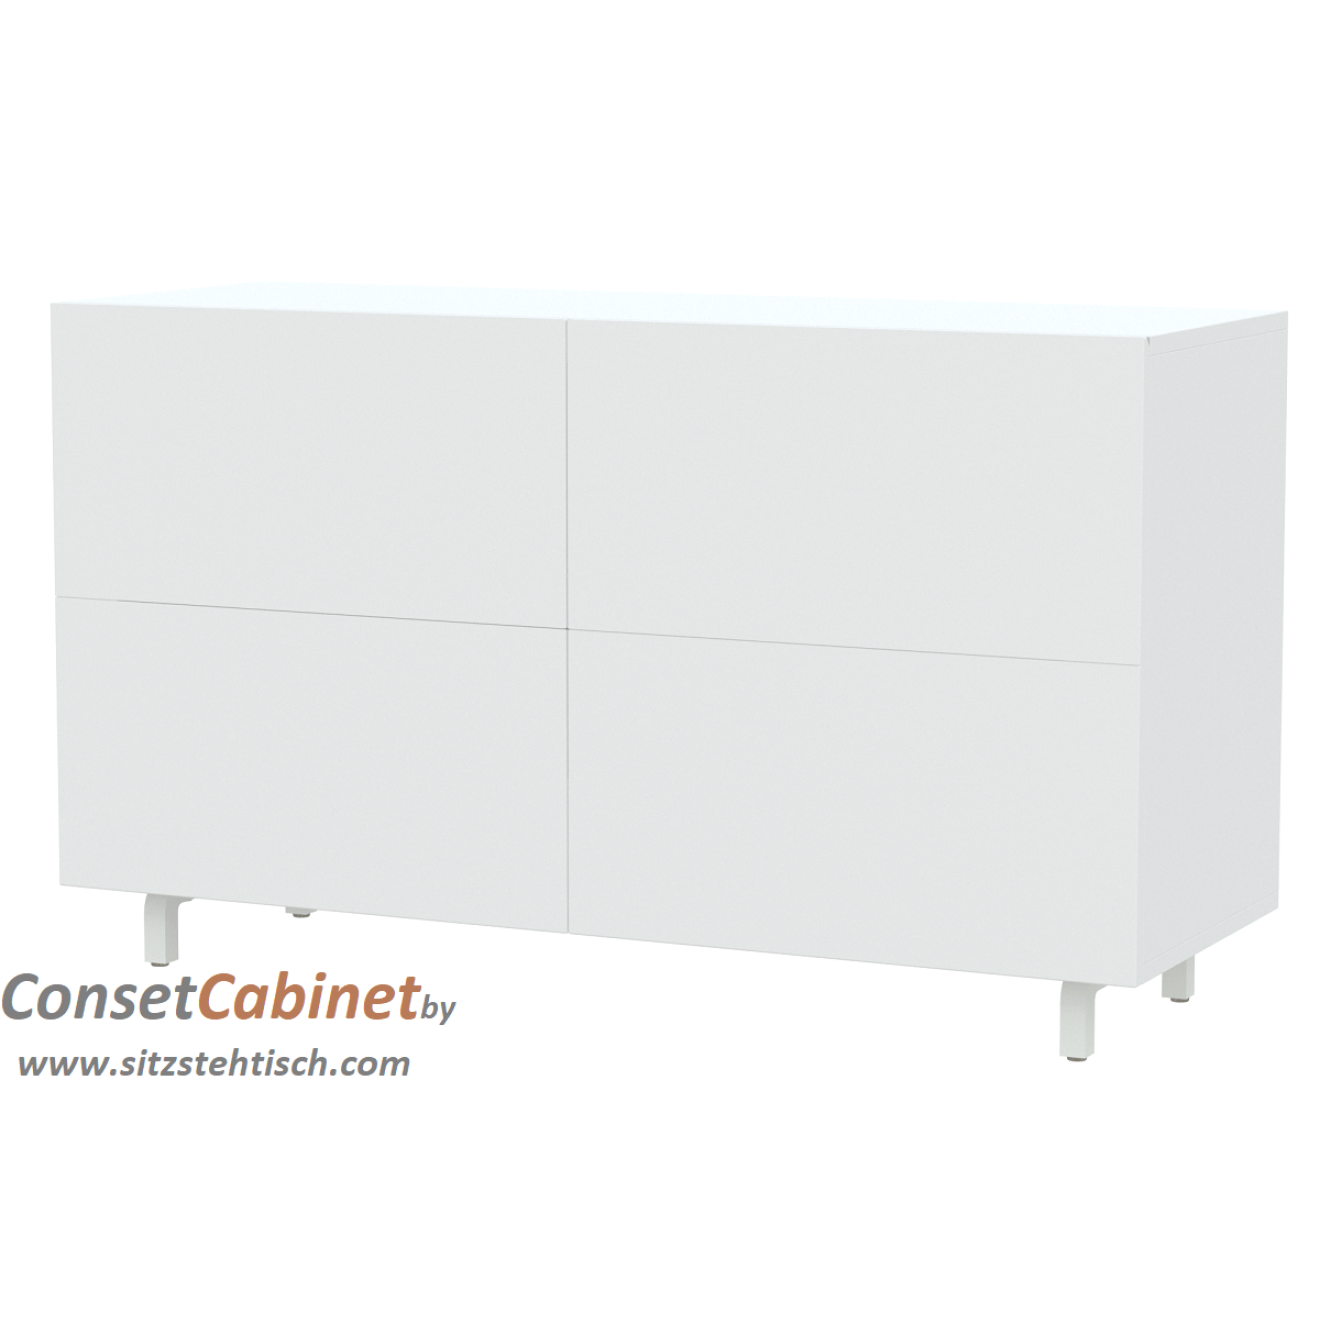 Schreibtisch im Schrank - Cabinet - elektrisch höhenverstellbar - mit großer elektrisch klappbarer Tischplatte 115 x 40/80 cm - Farbe Weiß oder Clay - Lehm - Höhe 68 - 130 cm cm verstellbar - Conset - CABINET 7W100-50